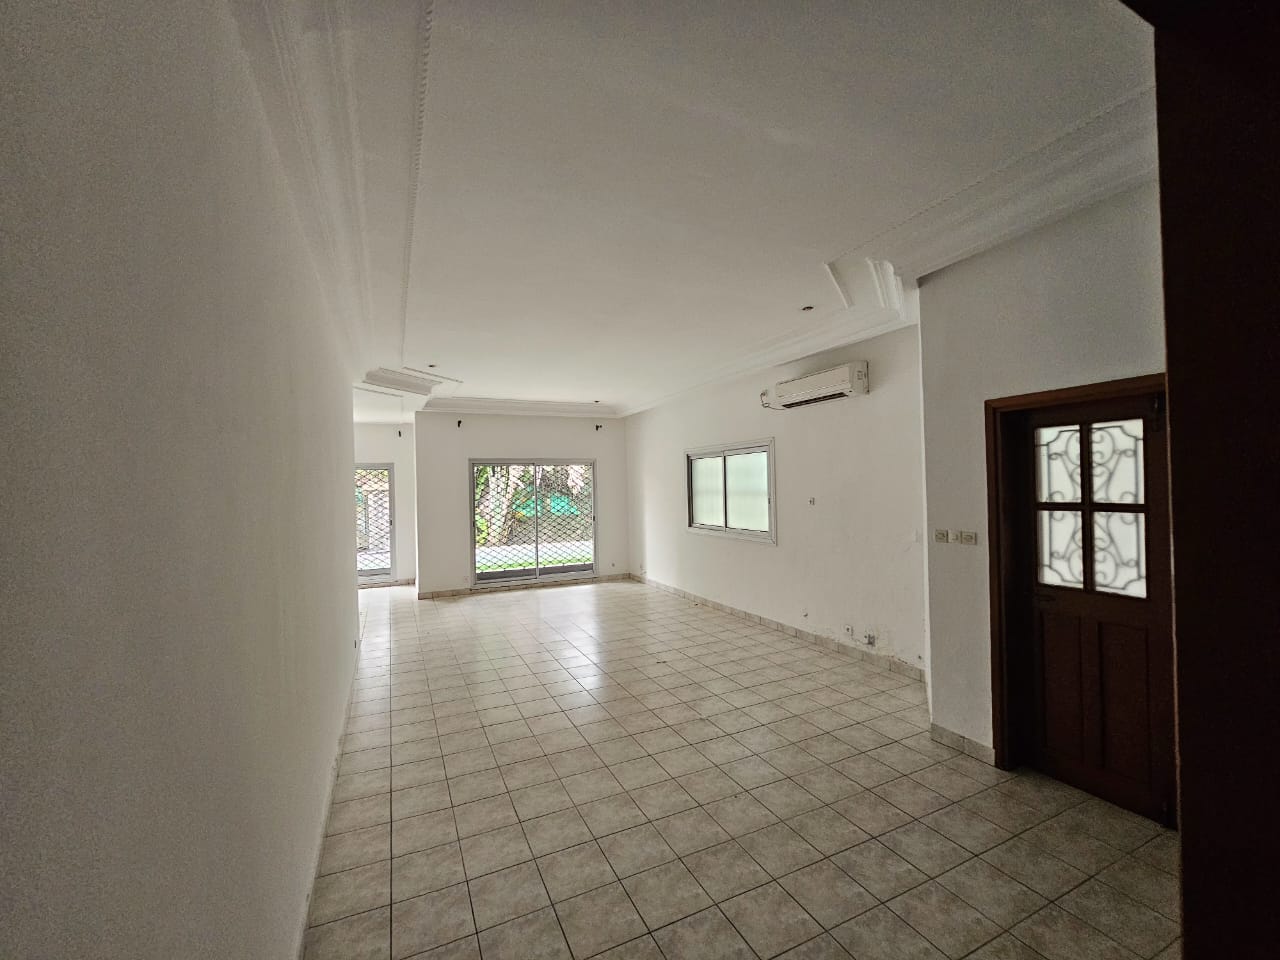 Maison (Villa) à louer - Douala, Bonapriso, 03 chambres 04 salles de bain Piscine - 1 salon(s), 3 chambre(s), 2 salle(s) de bains - 1 600 000 FCFA / mois